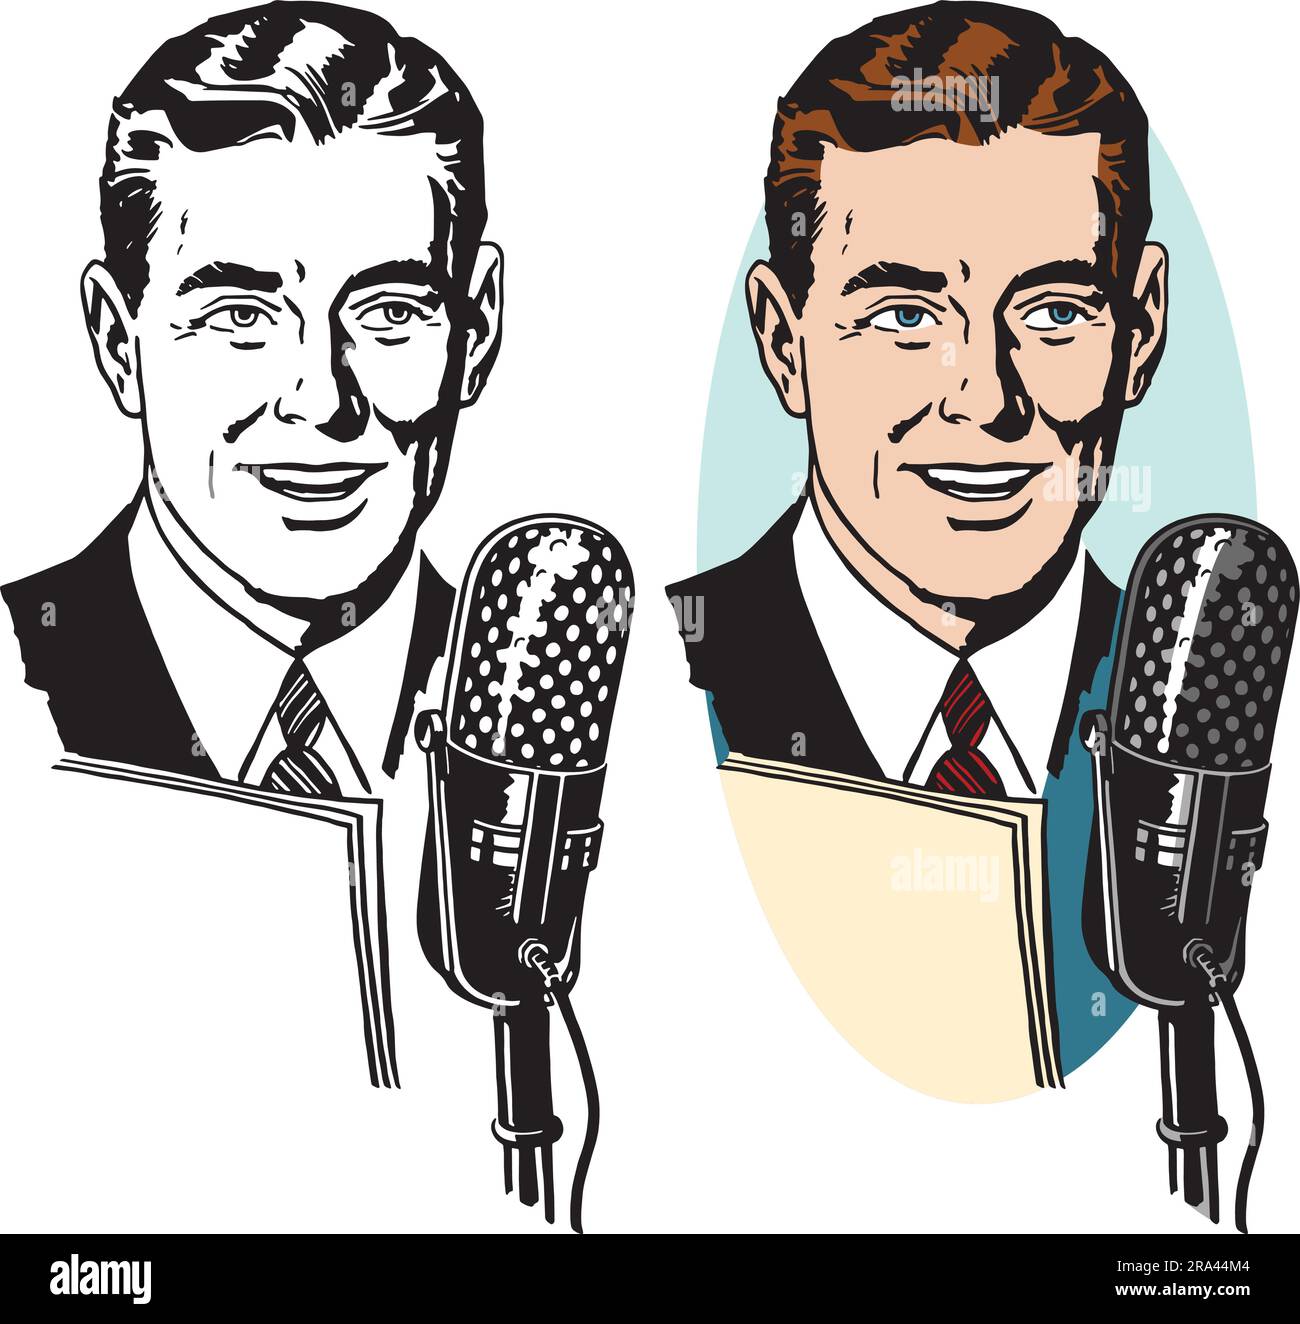 Une illustration rétro vintage d'un homme faisant une annonce dans un microphone. Illustration de Vecteur